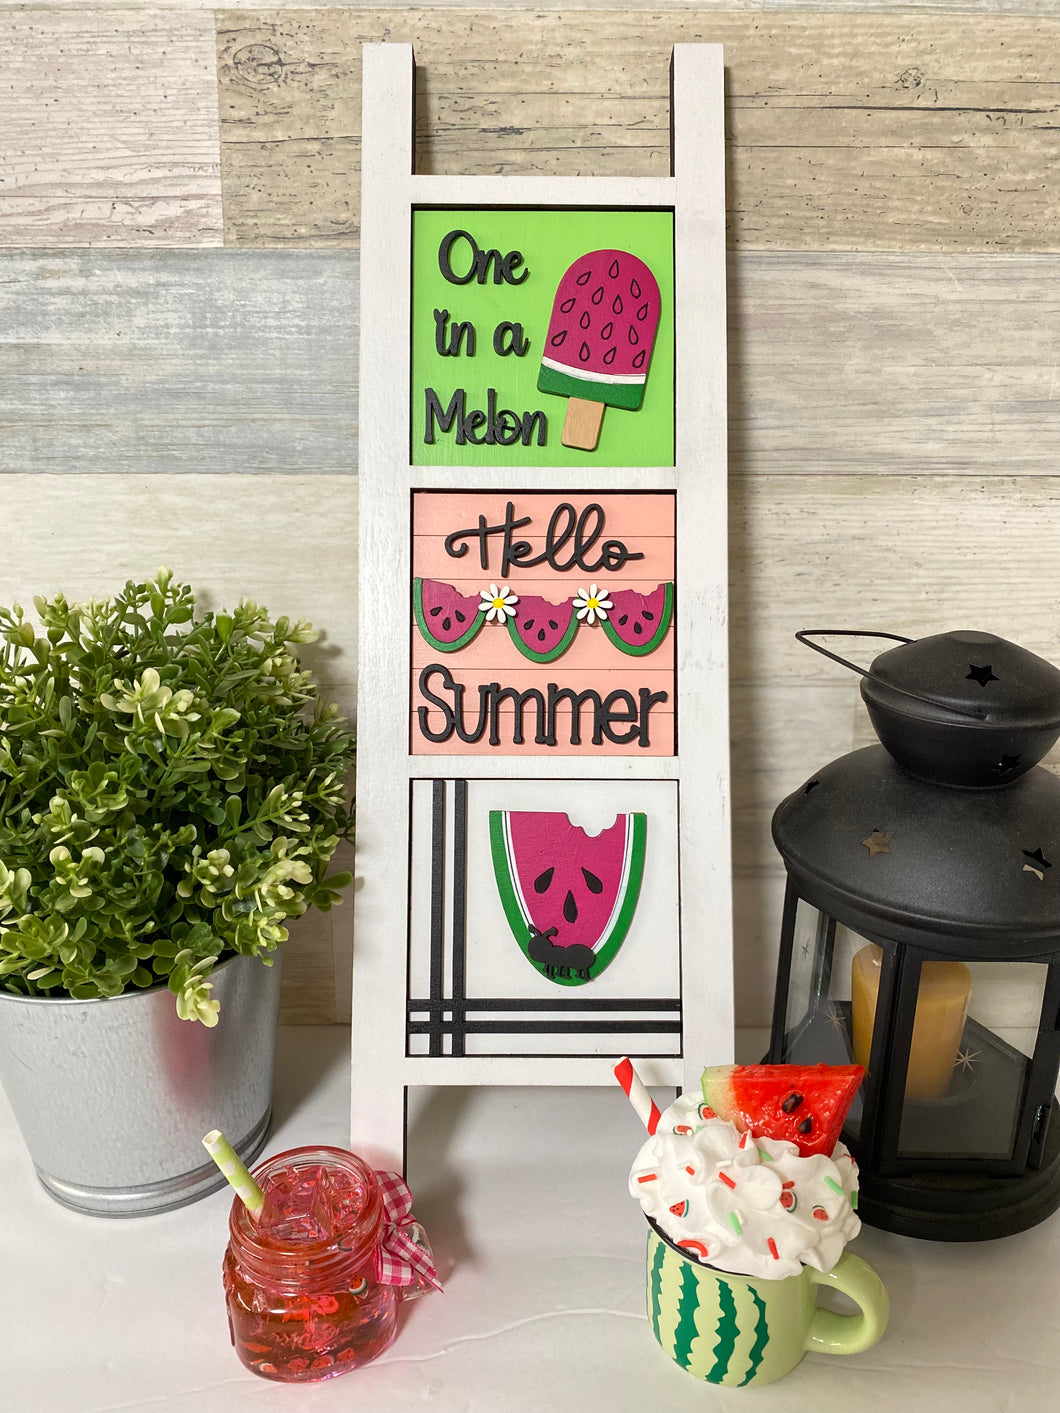 Ladder Tiles Summer Fruit Watermelon